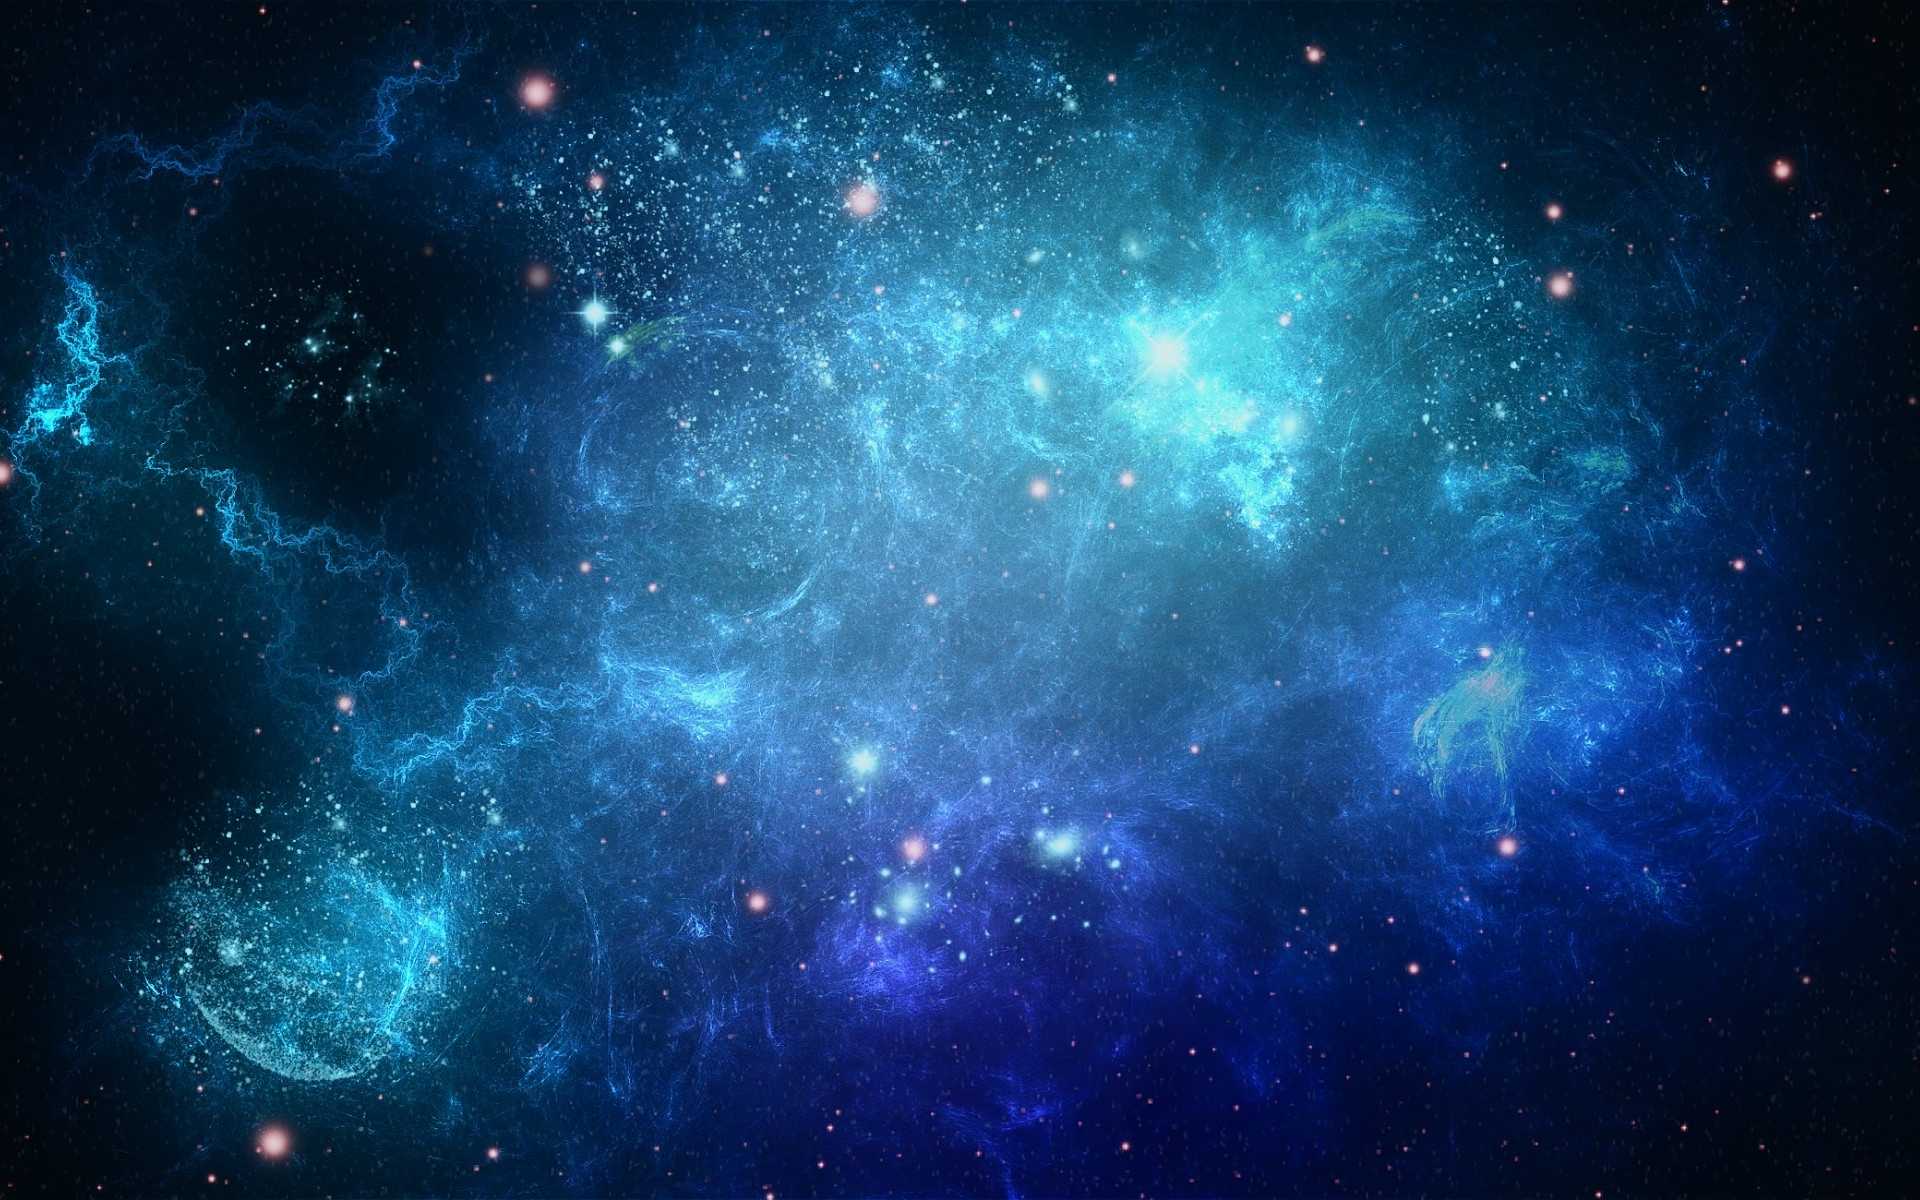 WallpaperDog mang đến cho bạn những bức hình nền thiên hà tuyệt đẹp nhất, đến nơi này bạn sẽ có cơ hội ngắm nhìn những hình ảnh các thiên hà hoành tráng và những vì sao lấp lánh. Hãy cùng WallpaperDog đưa bạn đến với thế giới vô tận của vũ trụ.